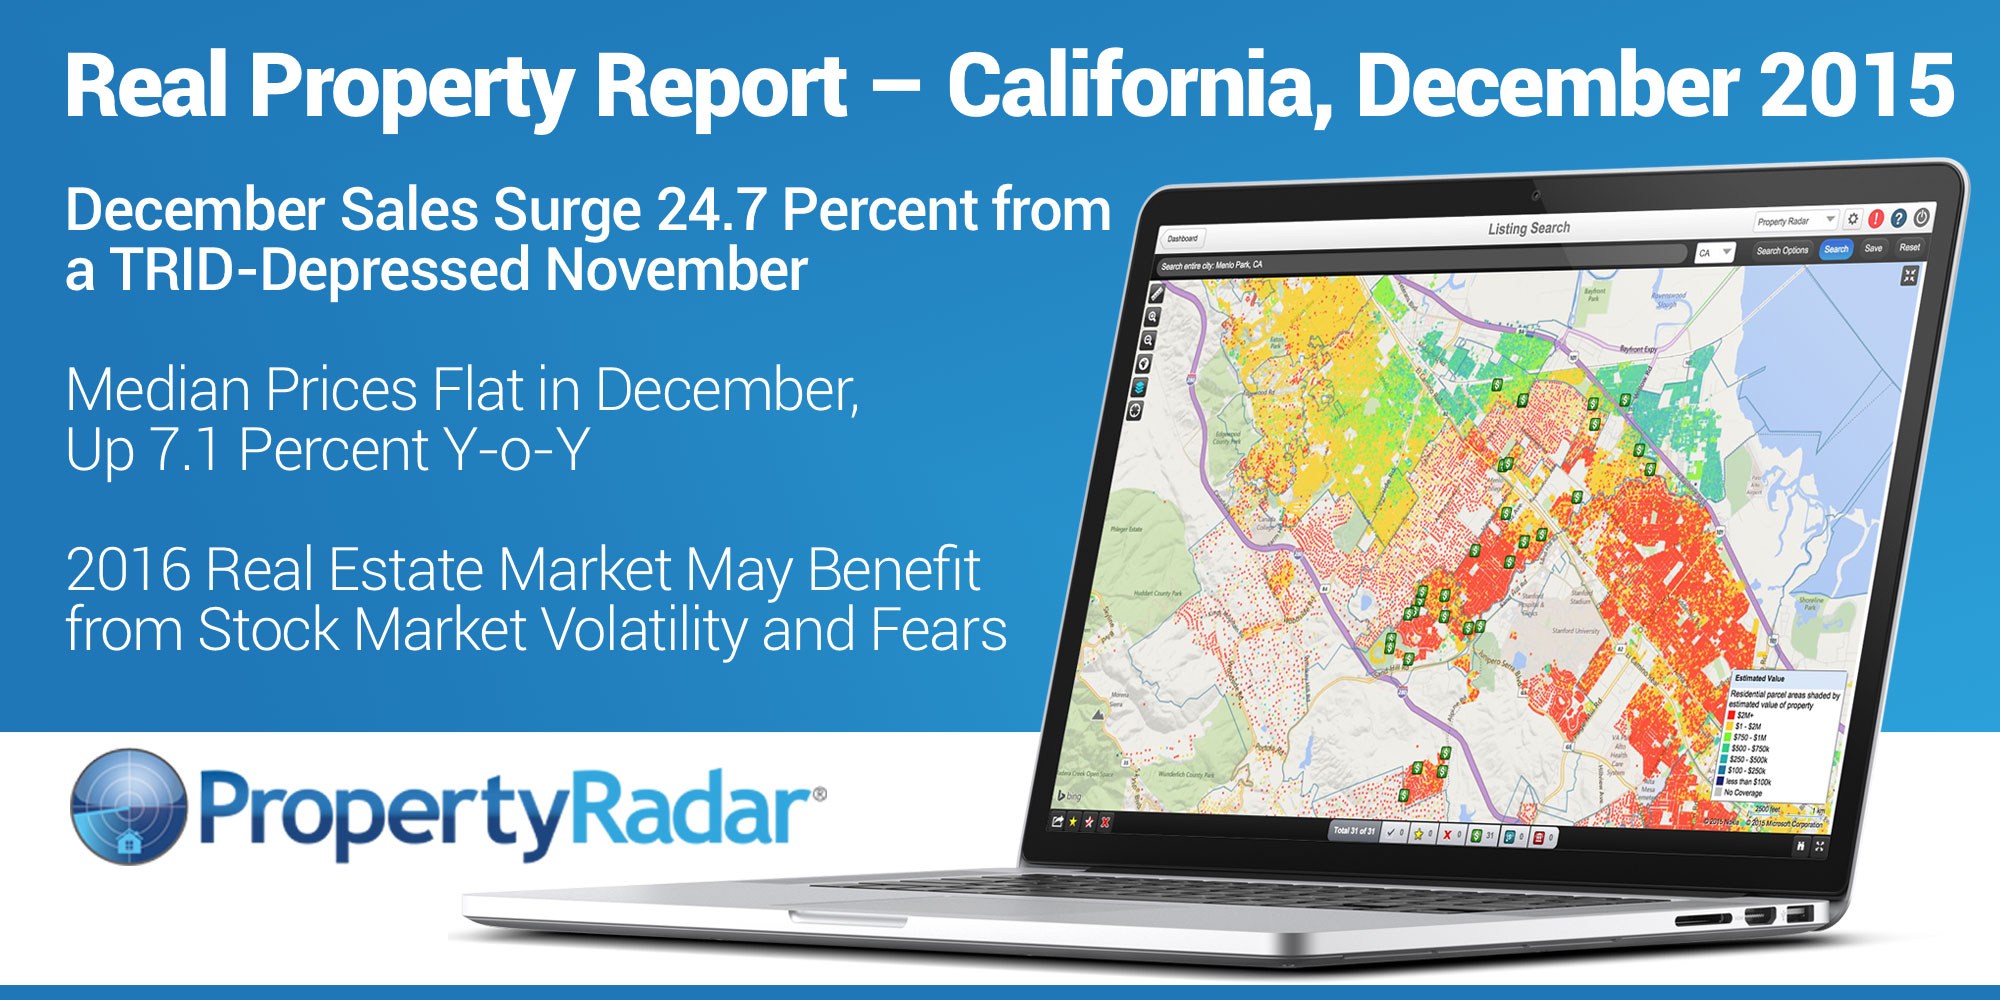 Real Property Report - California, December 2015